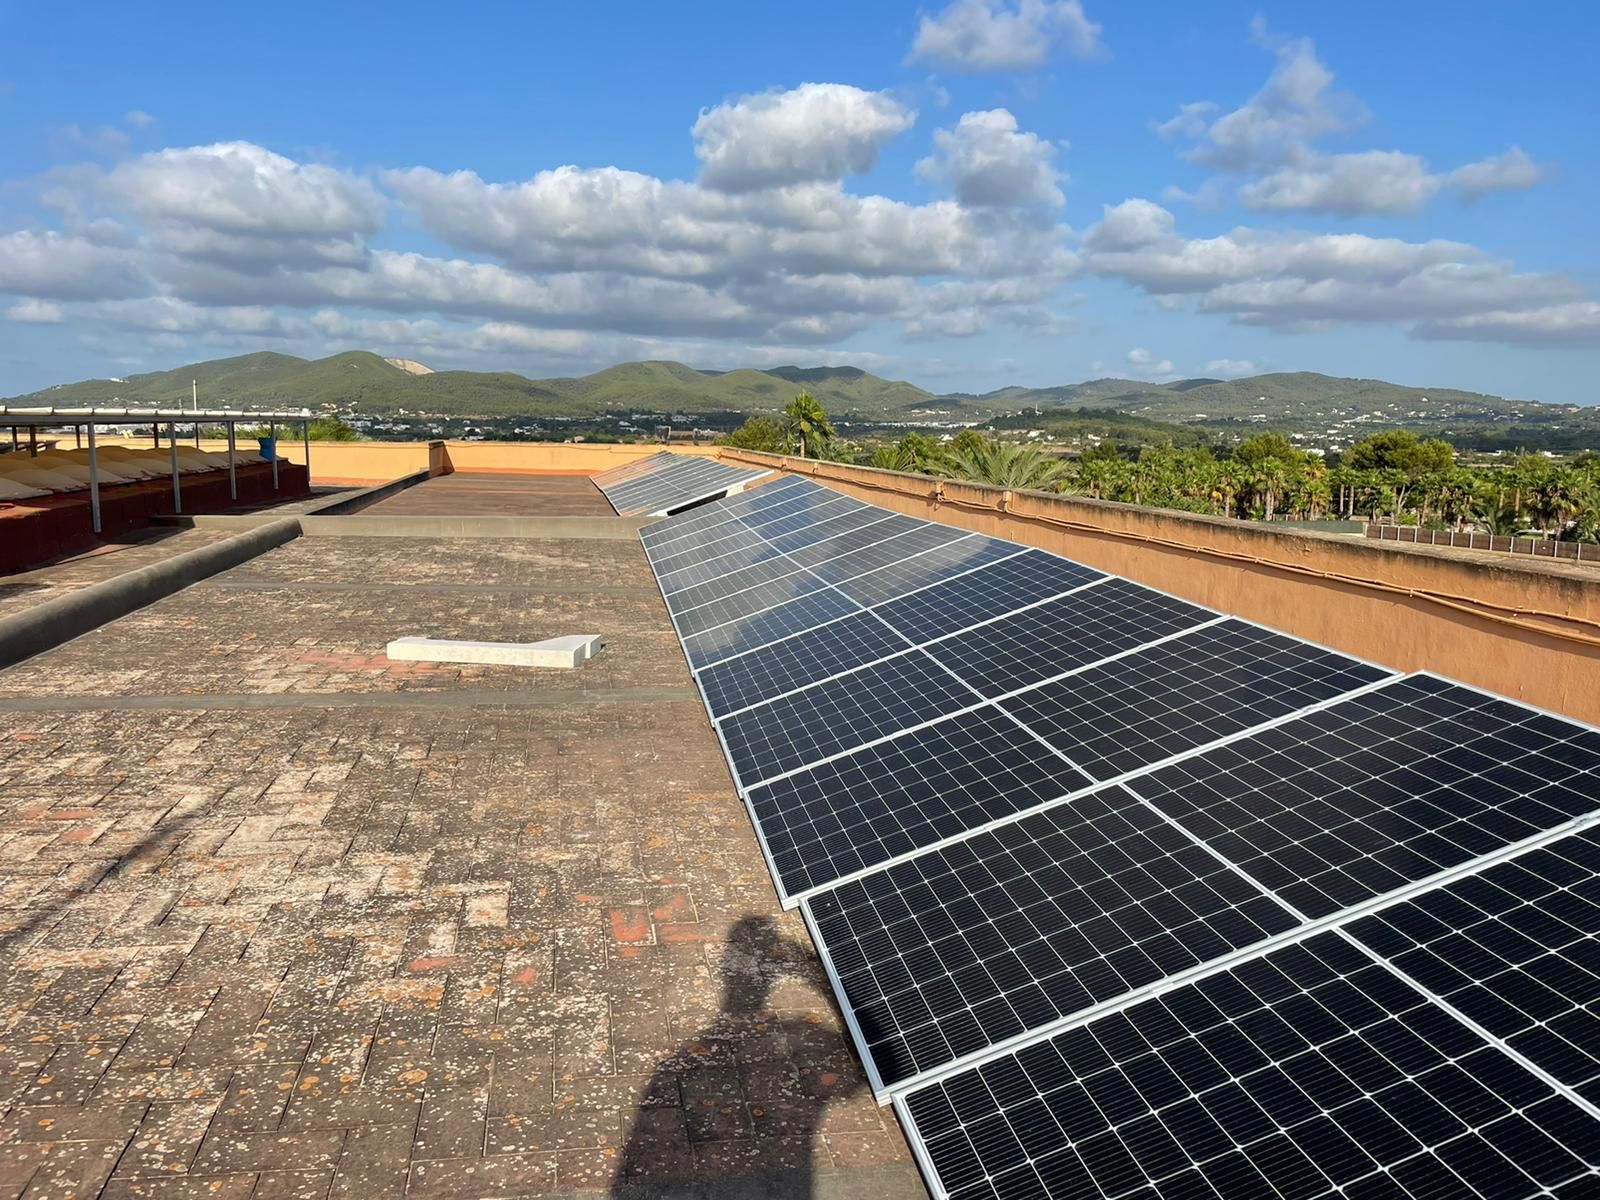 Finaliza la instalación de 84 paneles solares en el colegio de Jesús de que evitarán la emisión de 12 toneladas de C02 al año, cifra equivalente a lo que absorben 560 árboles